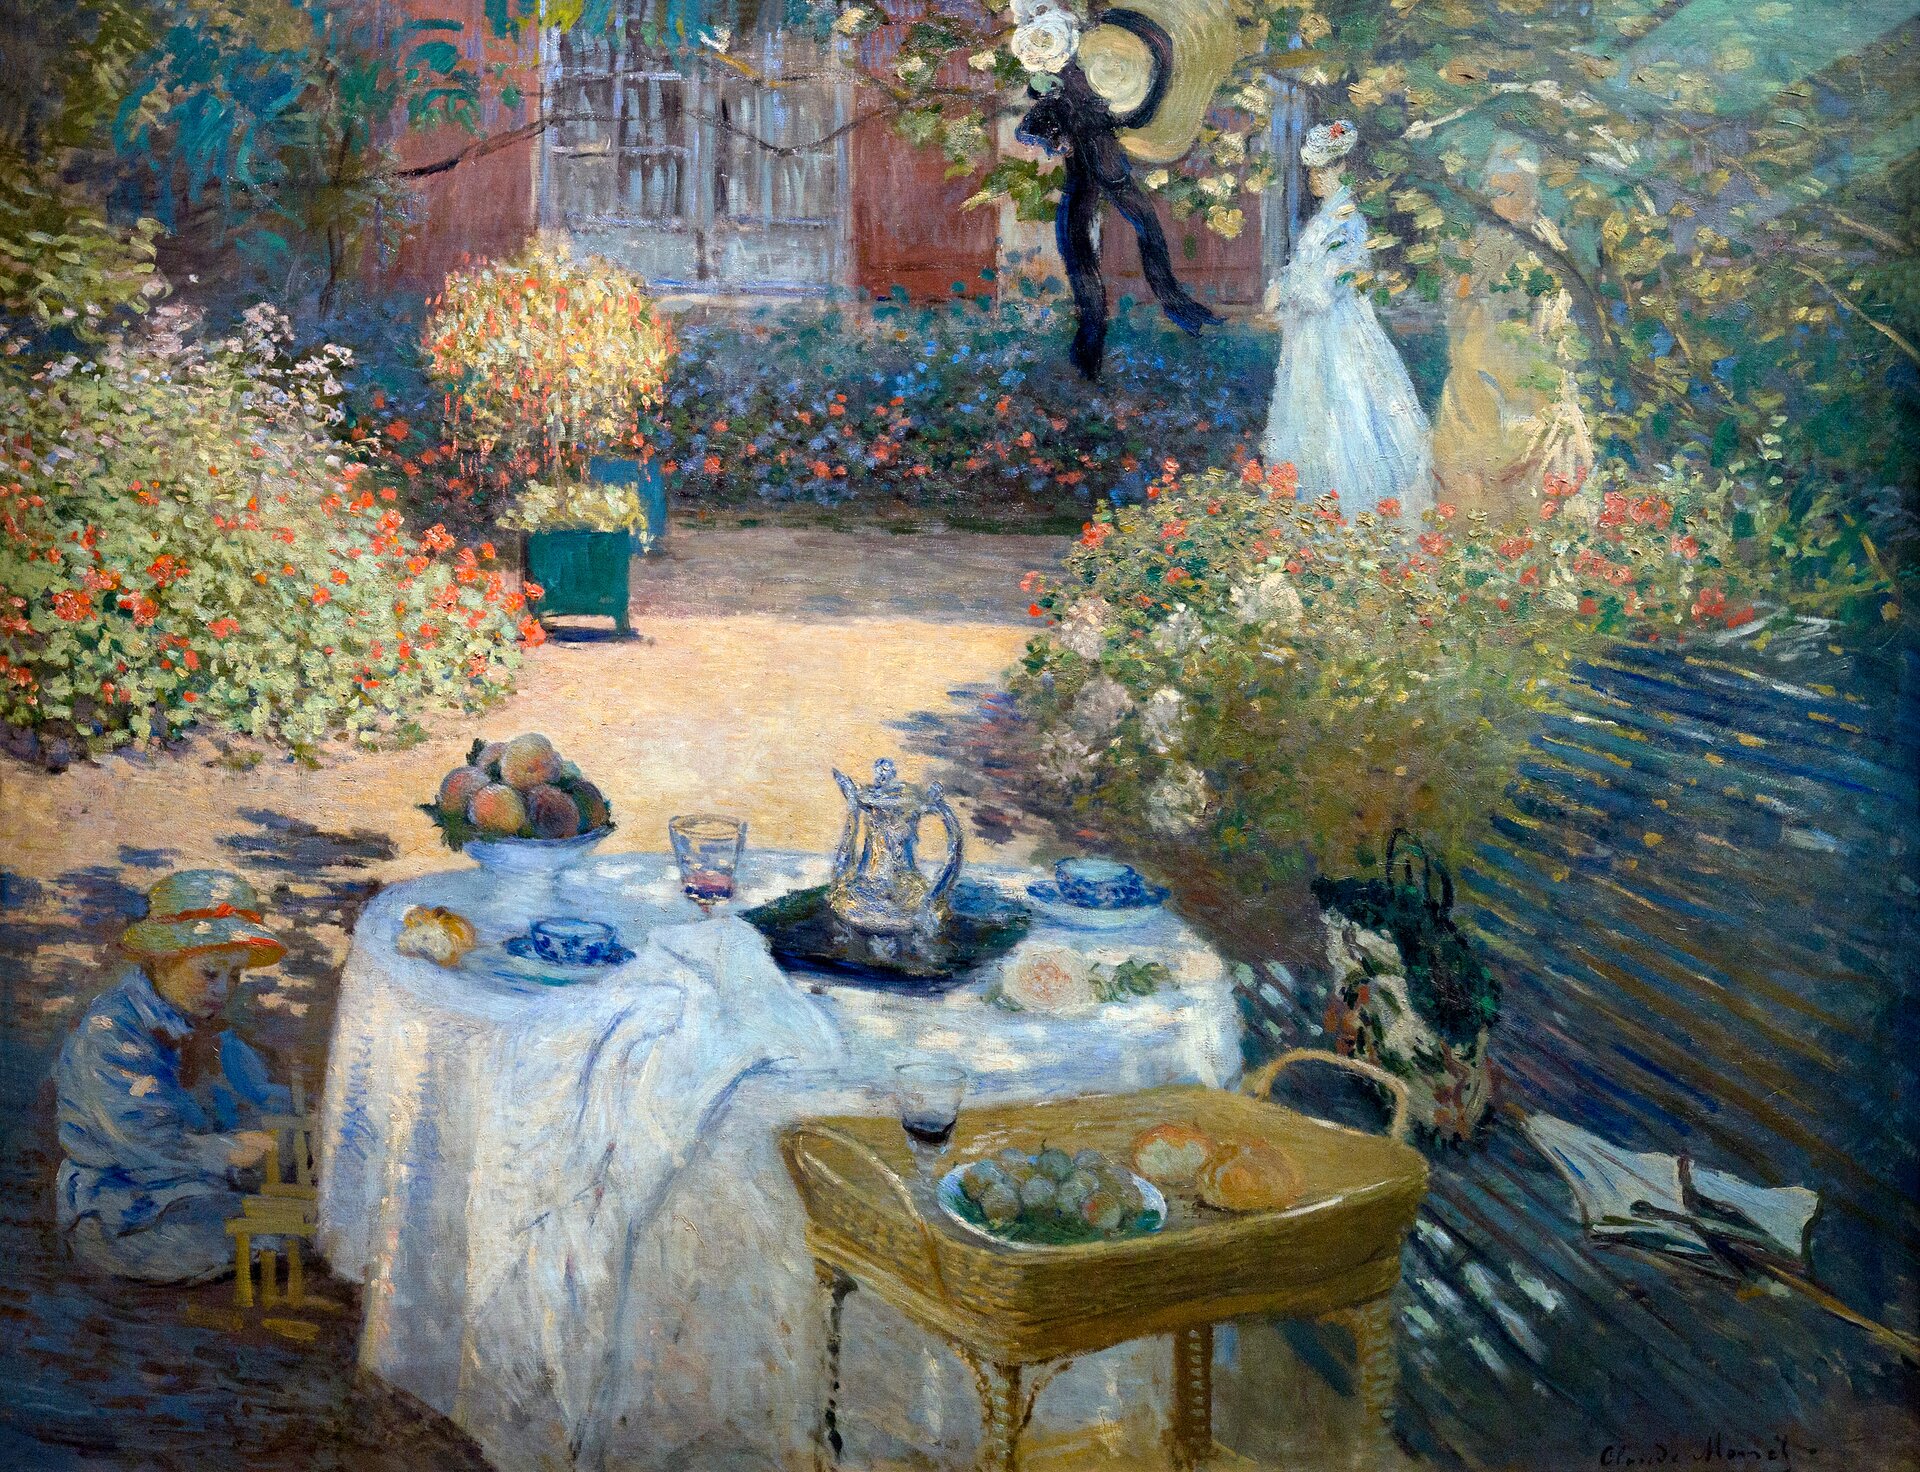 Ilustracja przedstawia obraz „Śniadanie w ogrodzie” autorstwa Claude Moneta. Obraz ukazuje stół z obrusem znajdujący się w ogrodzie. Na stole znajdują się potrawy oraz napoje. Pod stołem widać dziecko bawiące się zabawkami.